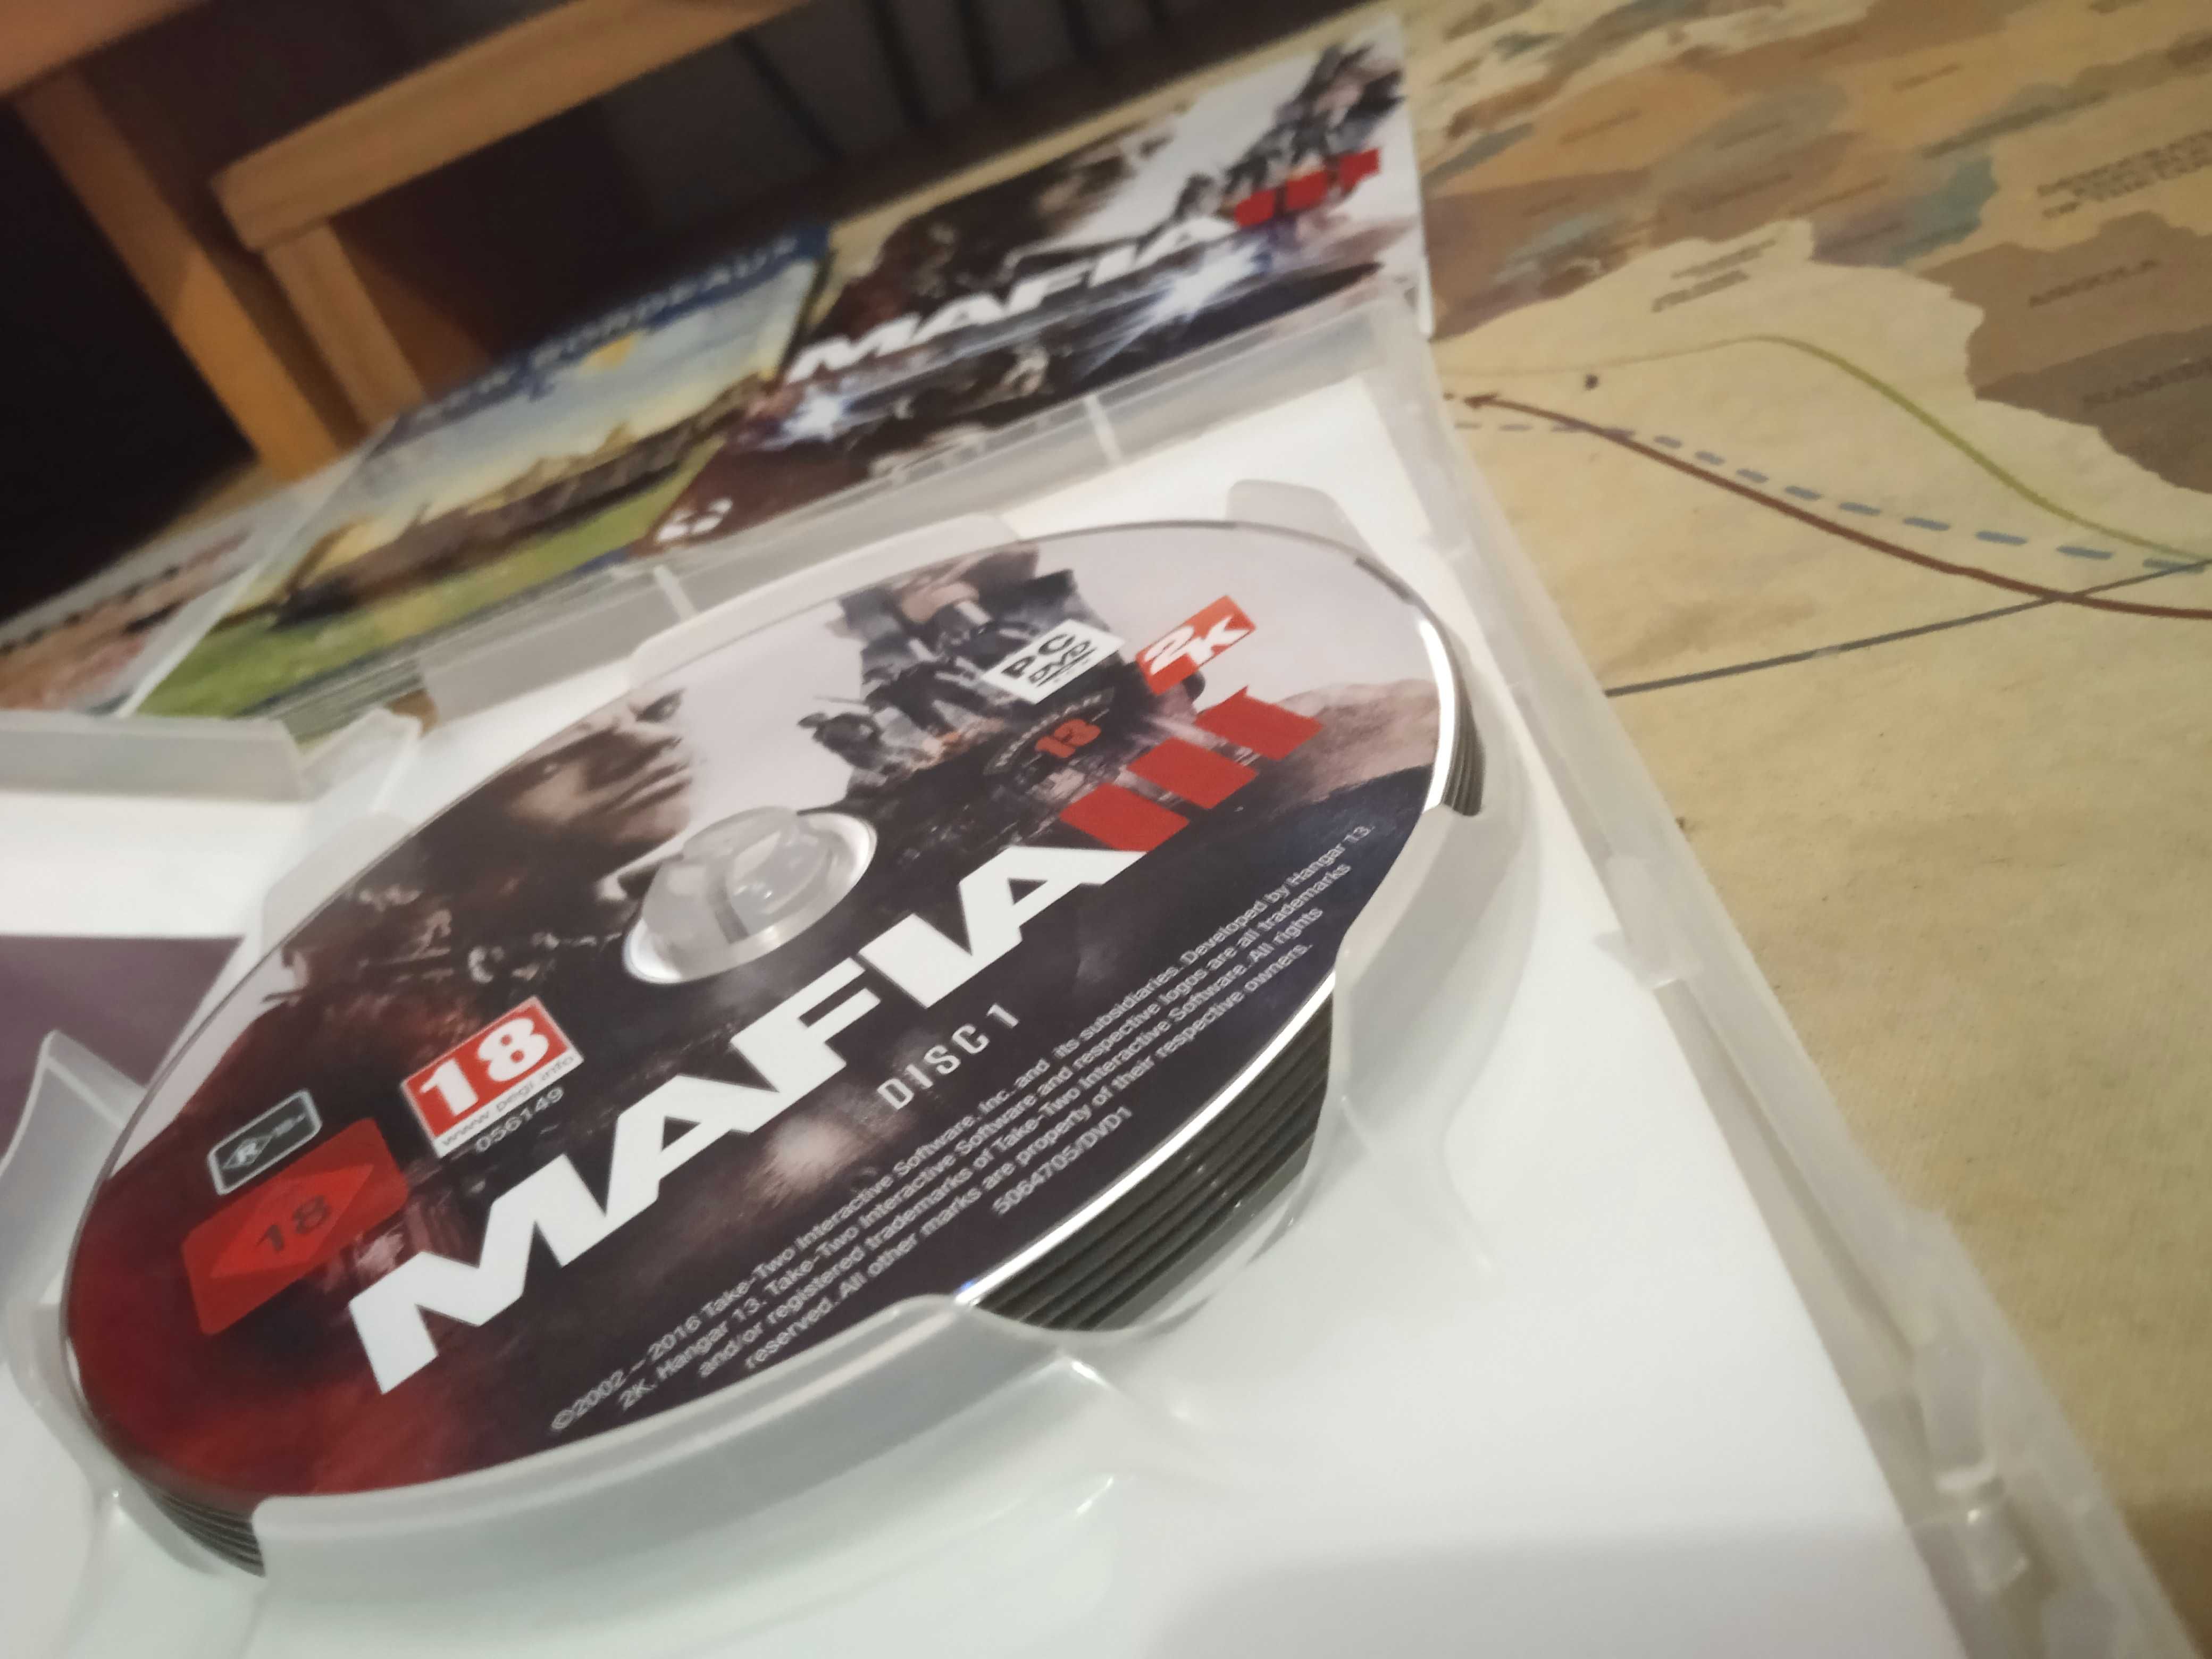 Mafia III/3 z wszystkim, kod użyty, proszę przeczytać opis!! PC CD PL